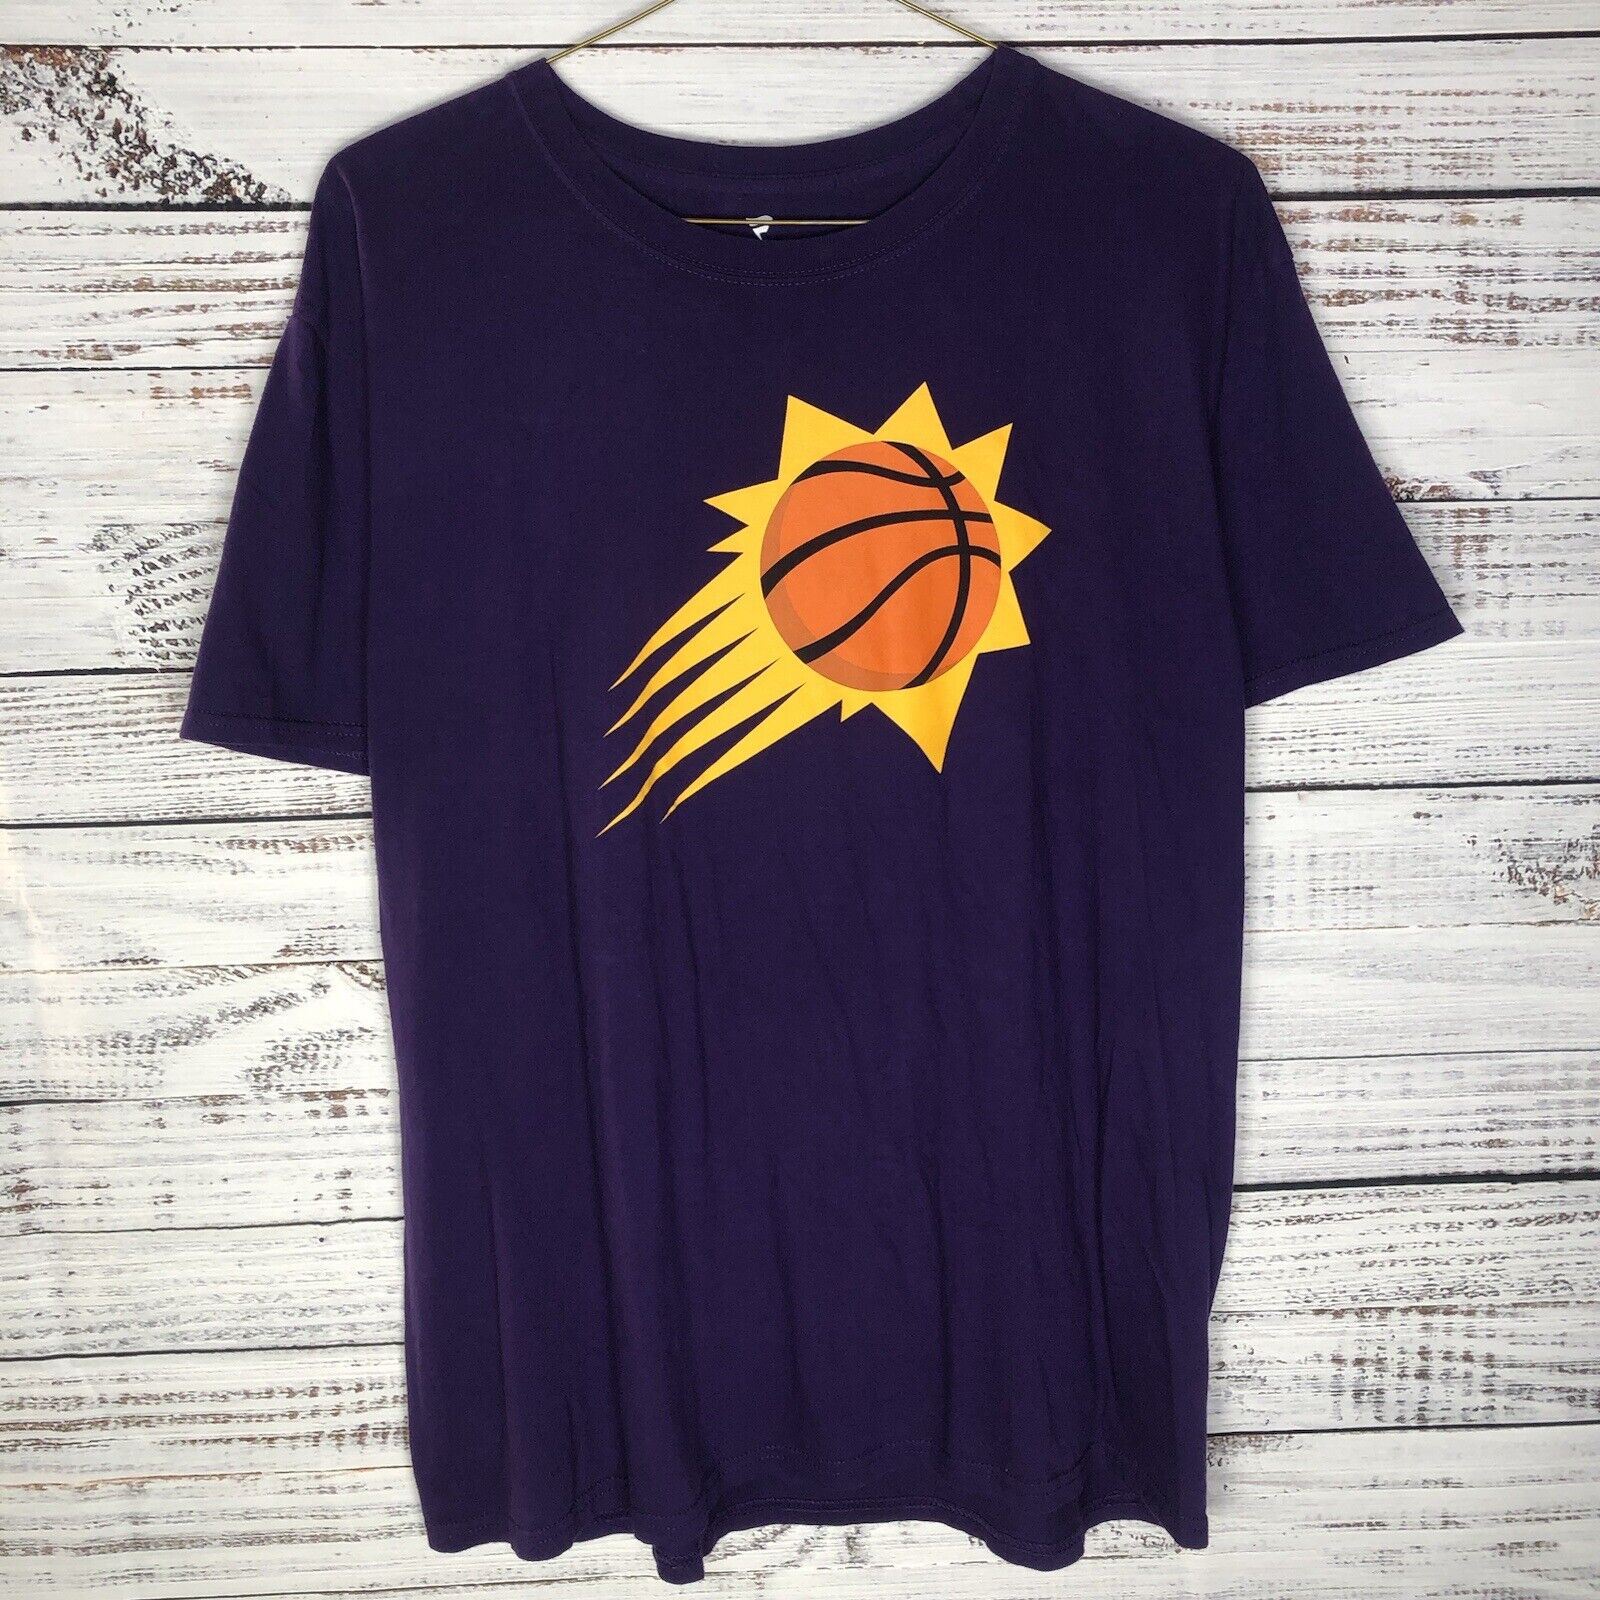 Nike Men's Phoenix Suns Devin Booker #1 White T-Shirt, Large